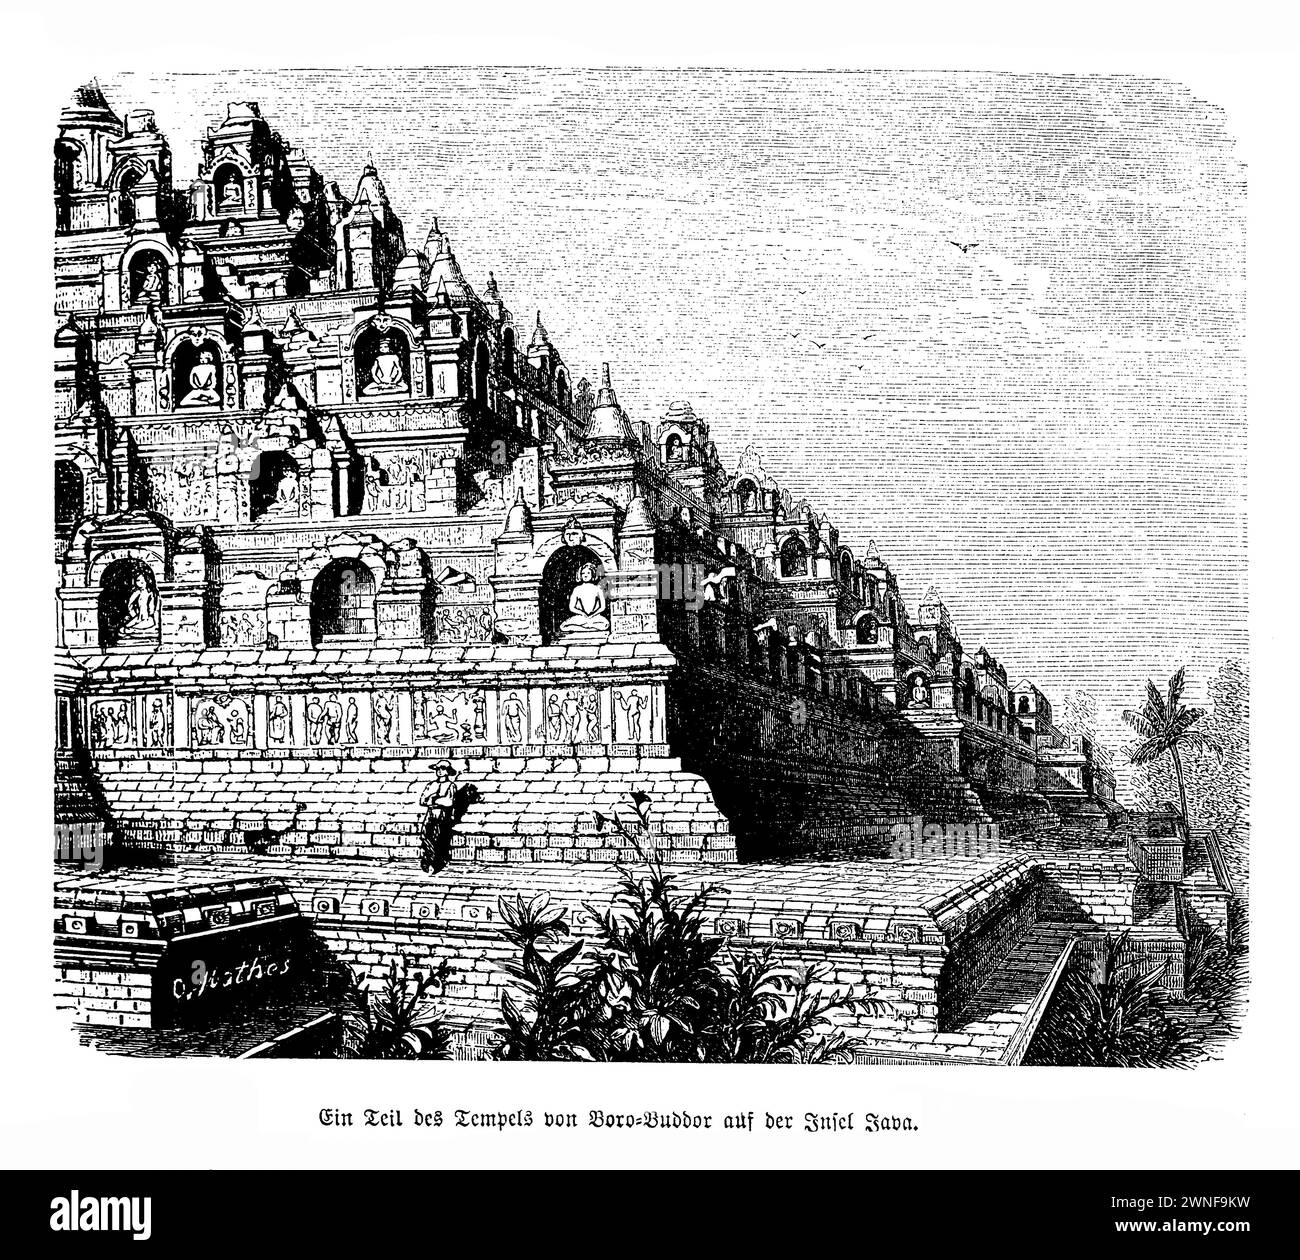 Borobudur-Tempel Java. Majestätisch erhebt sich der Borobudur-Tempel auf der üppigen Ebene von Java, Indonesien, und ist ein monumentales Zeugnis buddhistischer Kunst und Architektur. Dieses großartige Gebäude wurde im 9. Jahrhundert während der Sailendra-Dynastie erbaut und ist der weltweit größte buddhistische Tempel mit einem komplizierten Labyrinth aus Stupas, Statuen und Relieftafeln, die das Leben Buddhas und die Prinzipien des Buddhismus erzählen. Borobudur' Entwurf ähnelt einem kosmischen Berg und ist eine symbolische Darstellung der buddhistischen Kosmologie Stockfoto